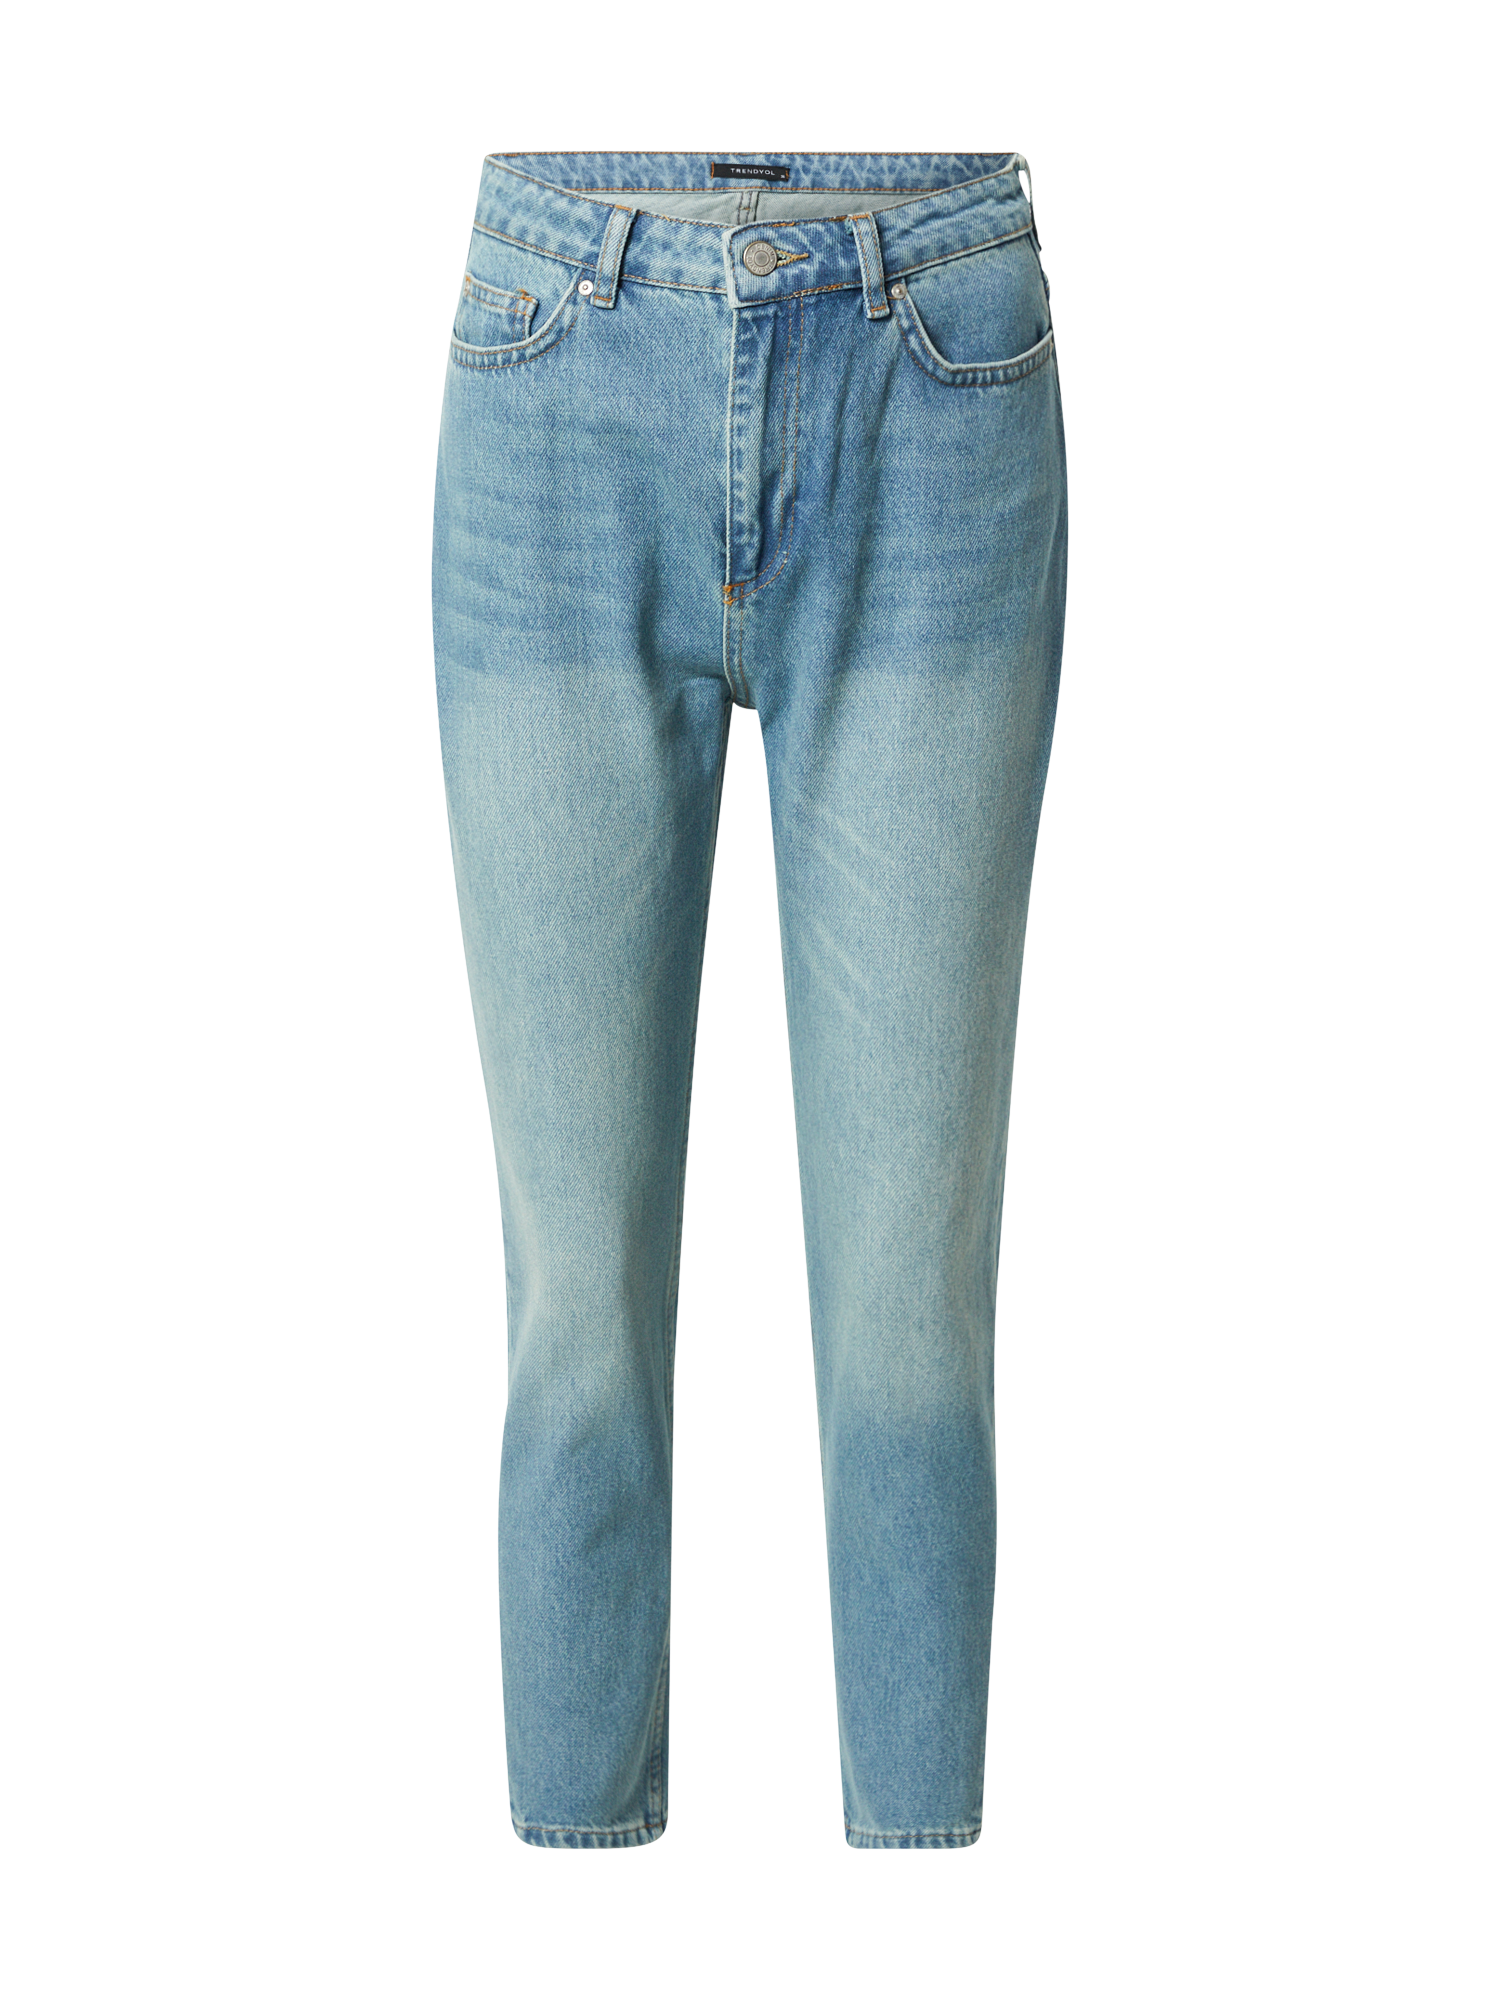 Odzież Kobiety Trendyol Jeansy w kolorze Niebieskim 